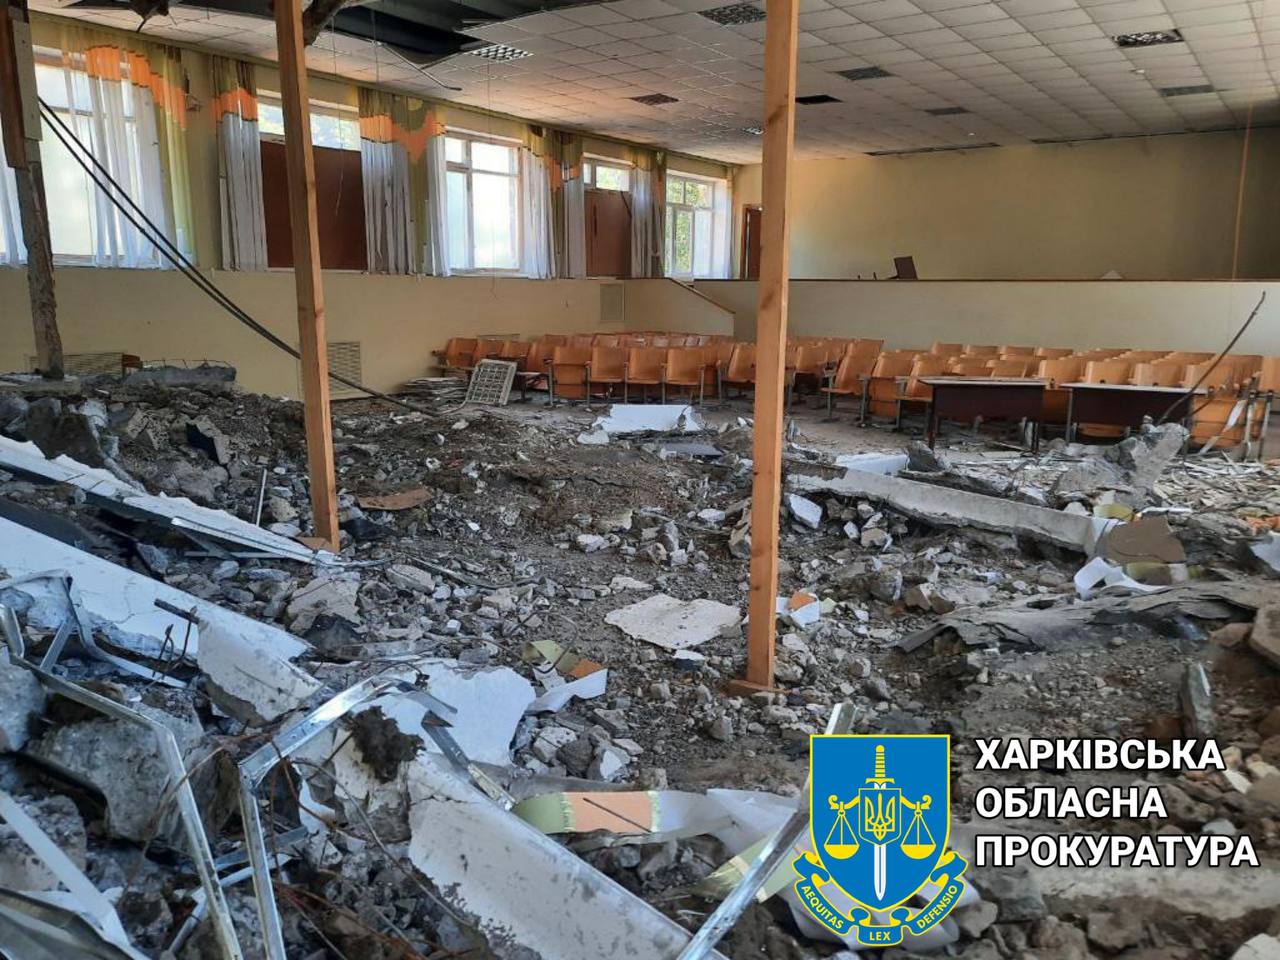 Прокурори оглянули школу на Салтівці: рашисти обстрілювали учбовий заклад чотири рази